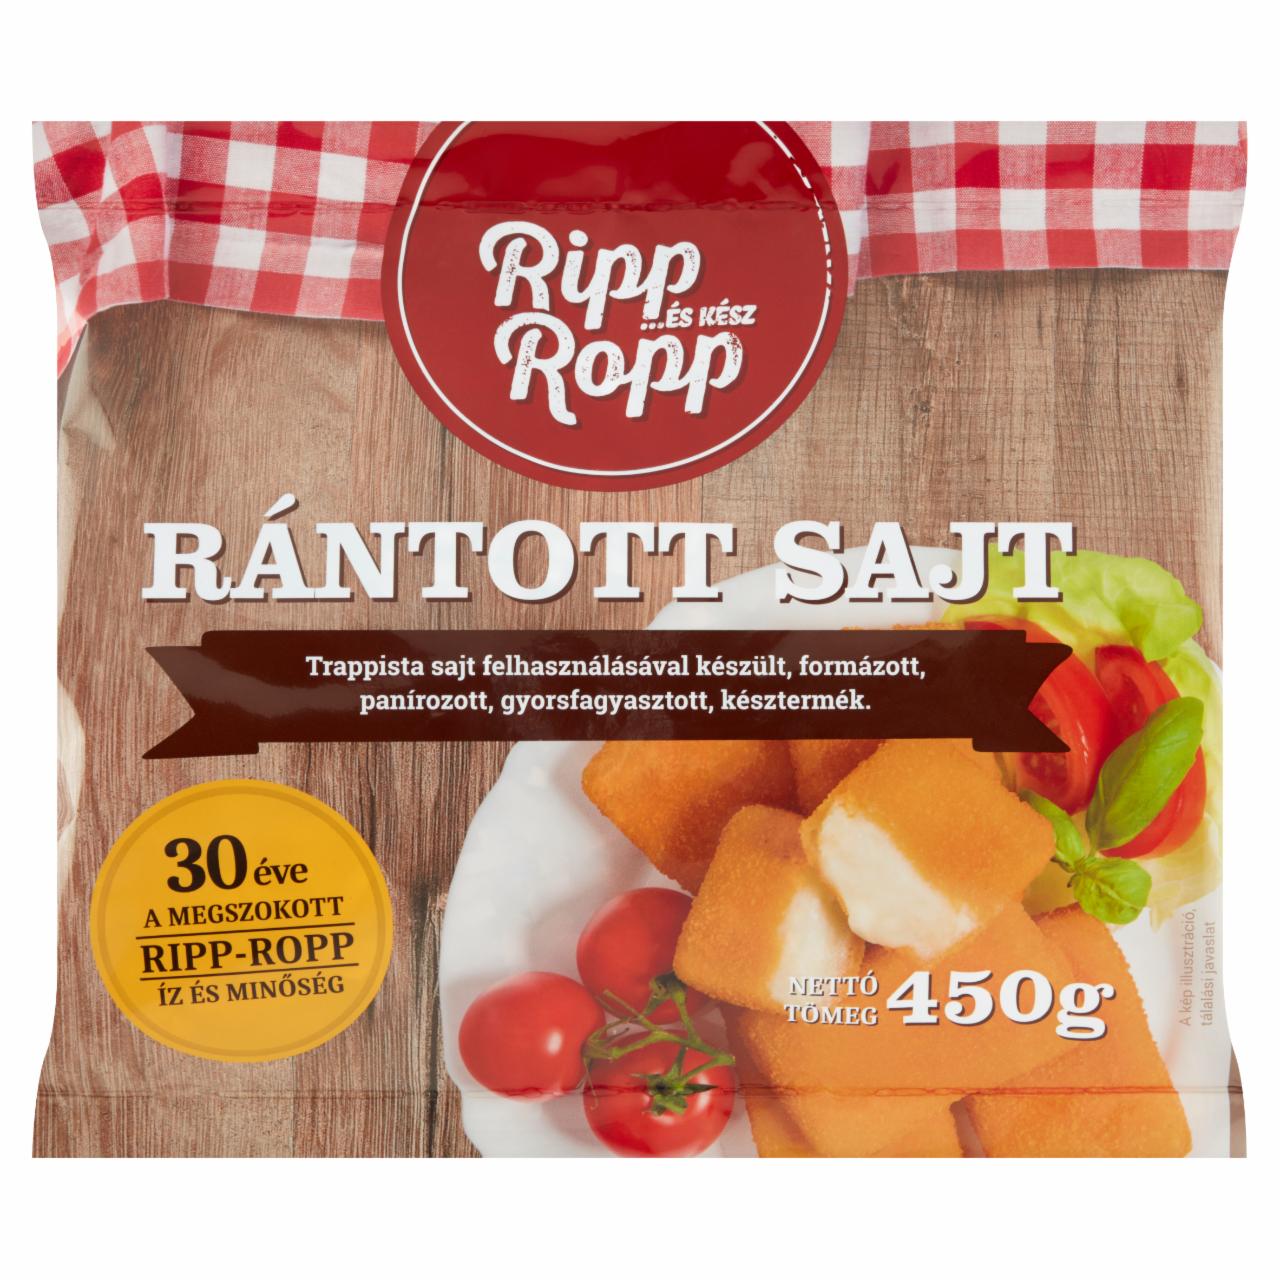 Képek - Ripp-Ropp Gourmet gyorsfagyasztott rántott sajt 450 g